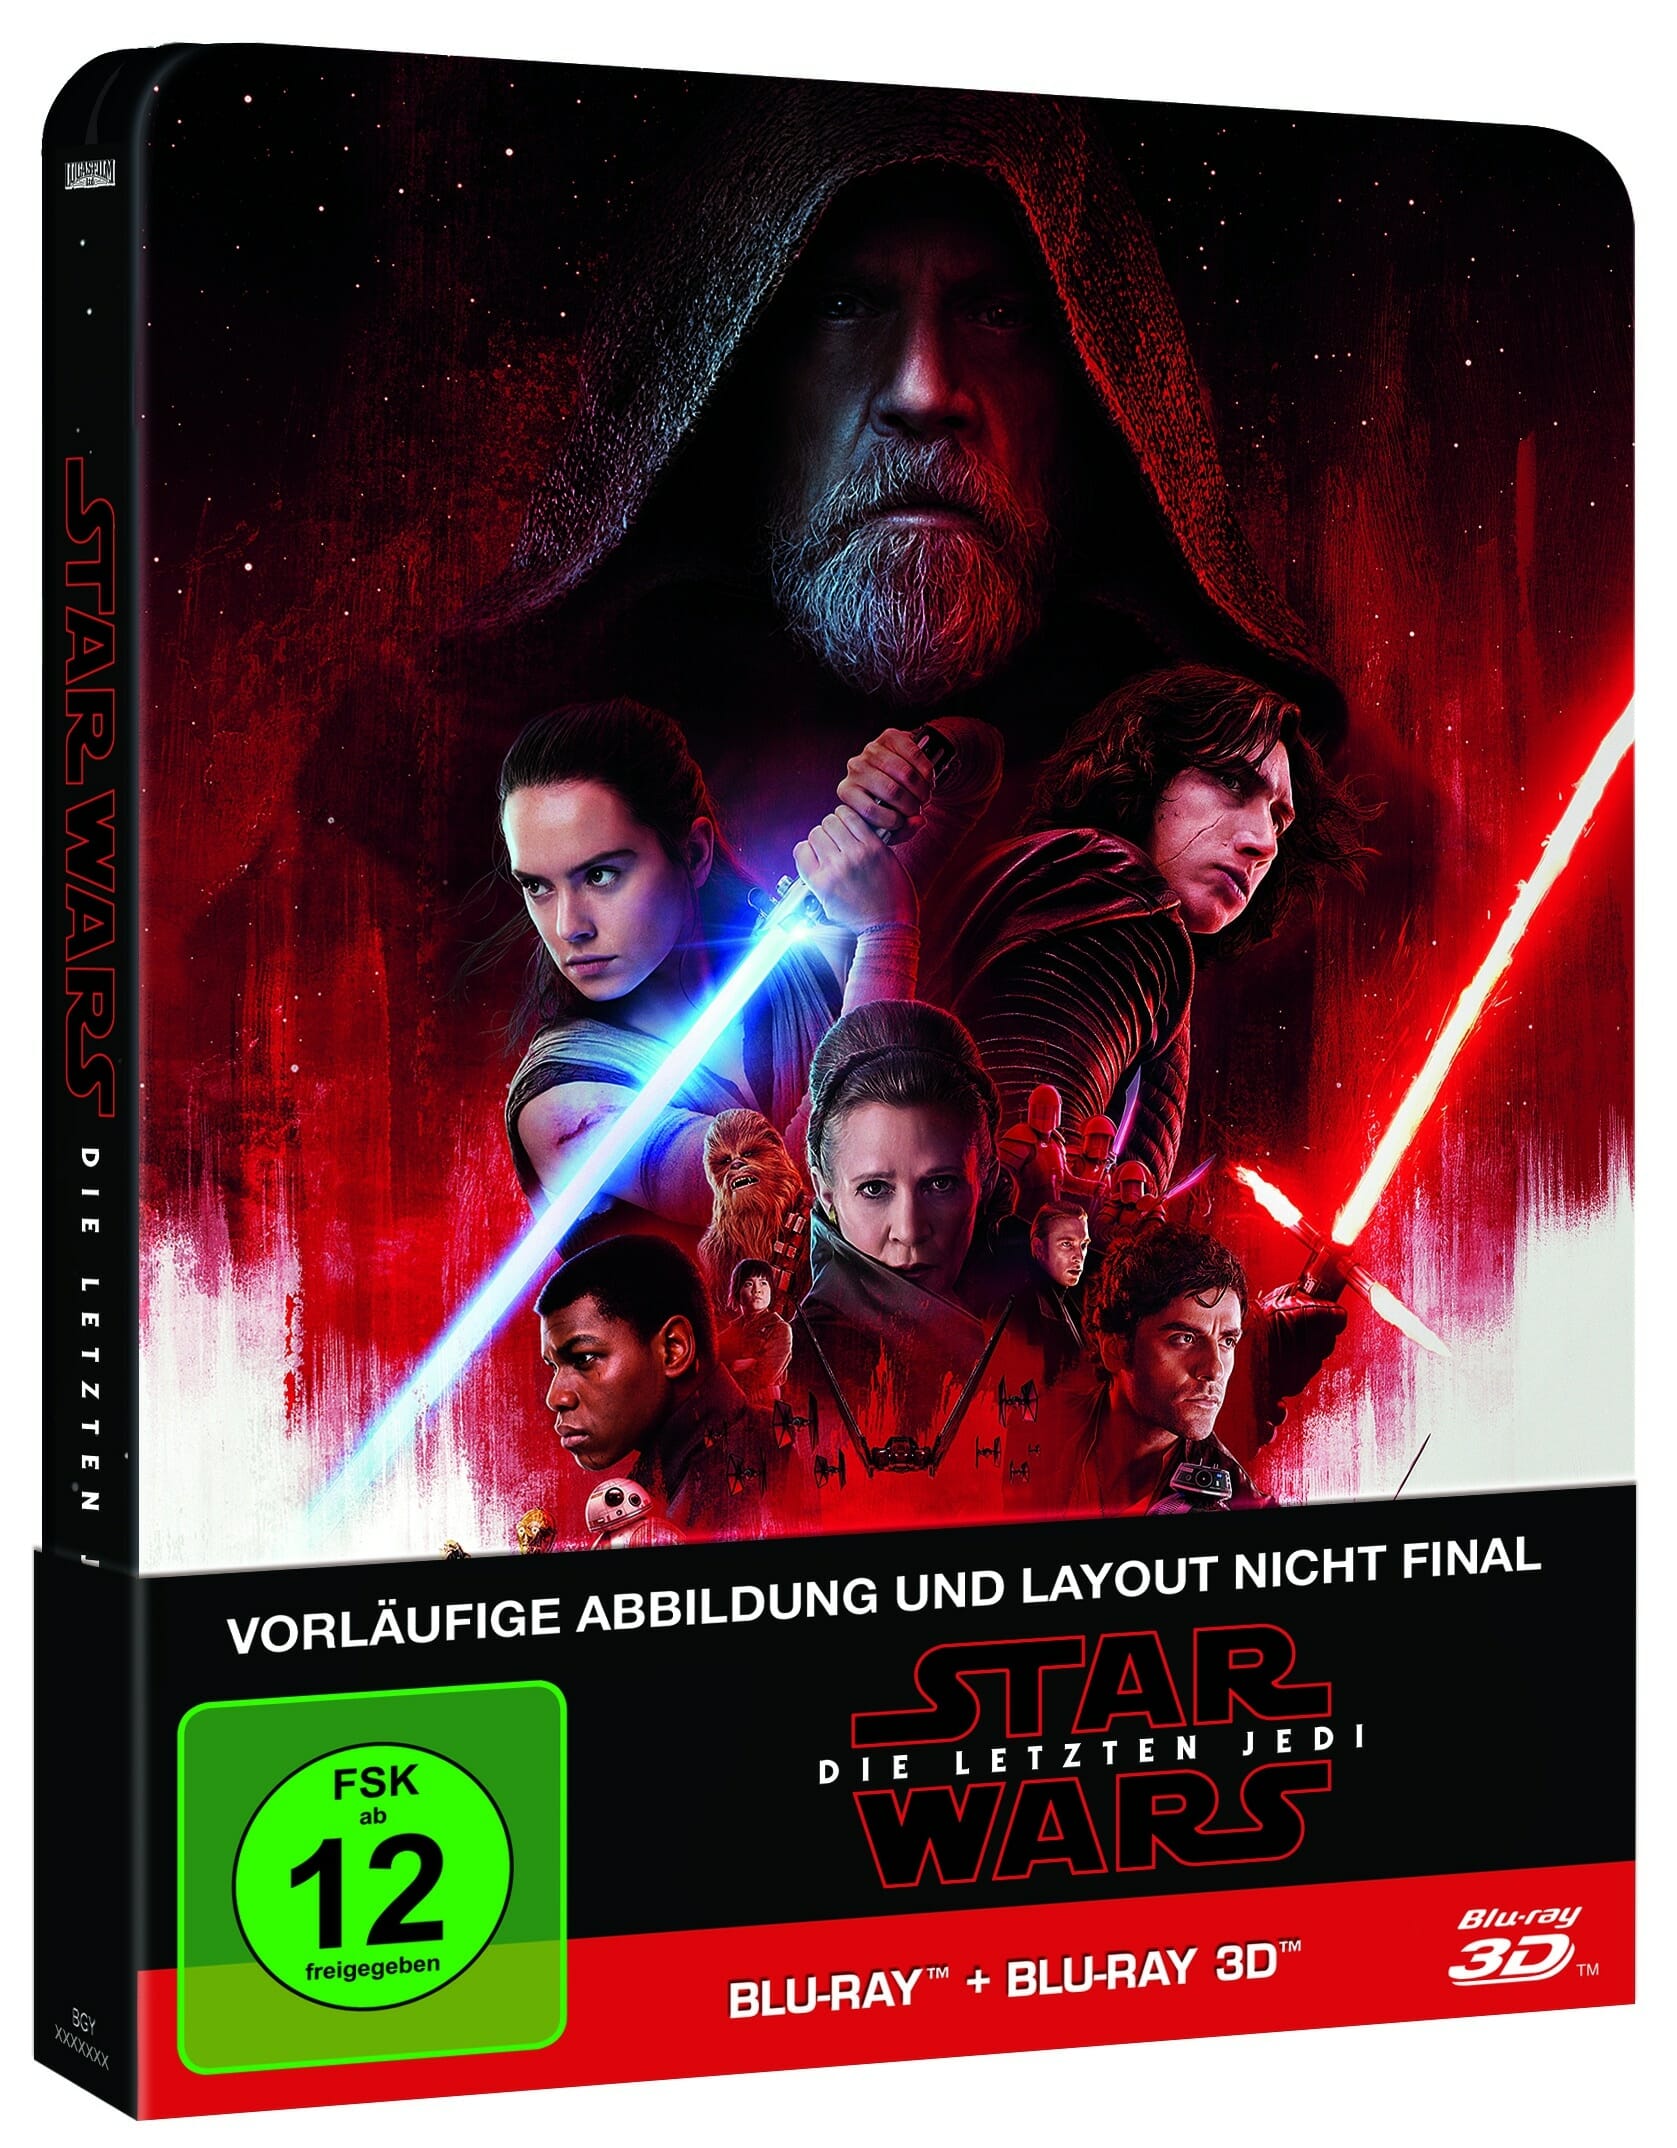 STAR WARS: Die letzten Jedi erscheint auf 4K UHD Blu-ray! (Update